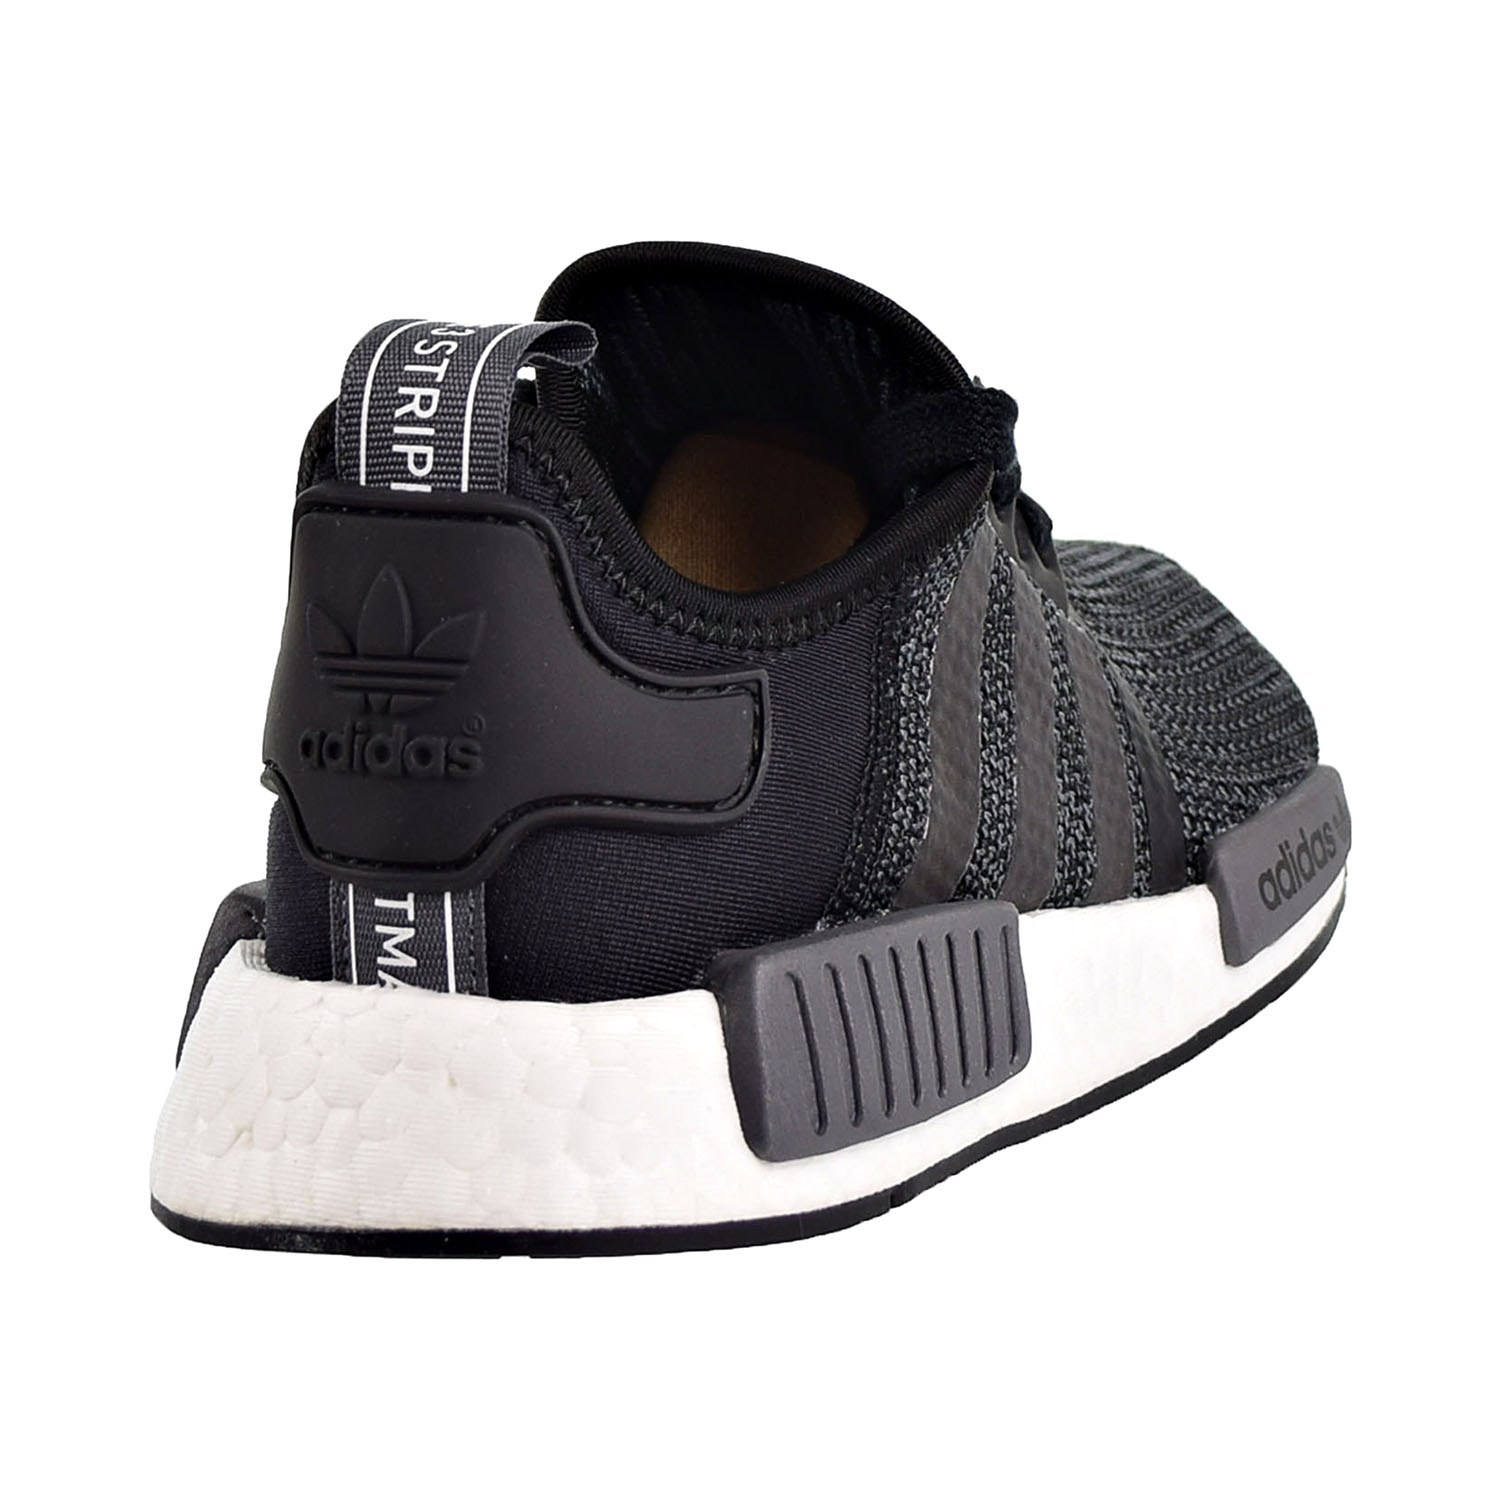 Shoes Core Black-Carbon B79758 